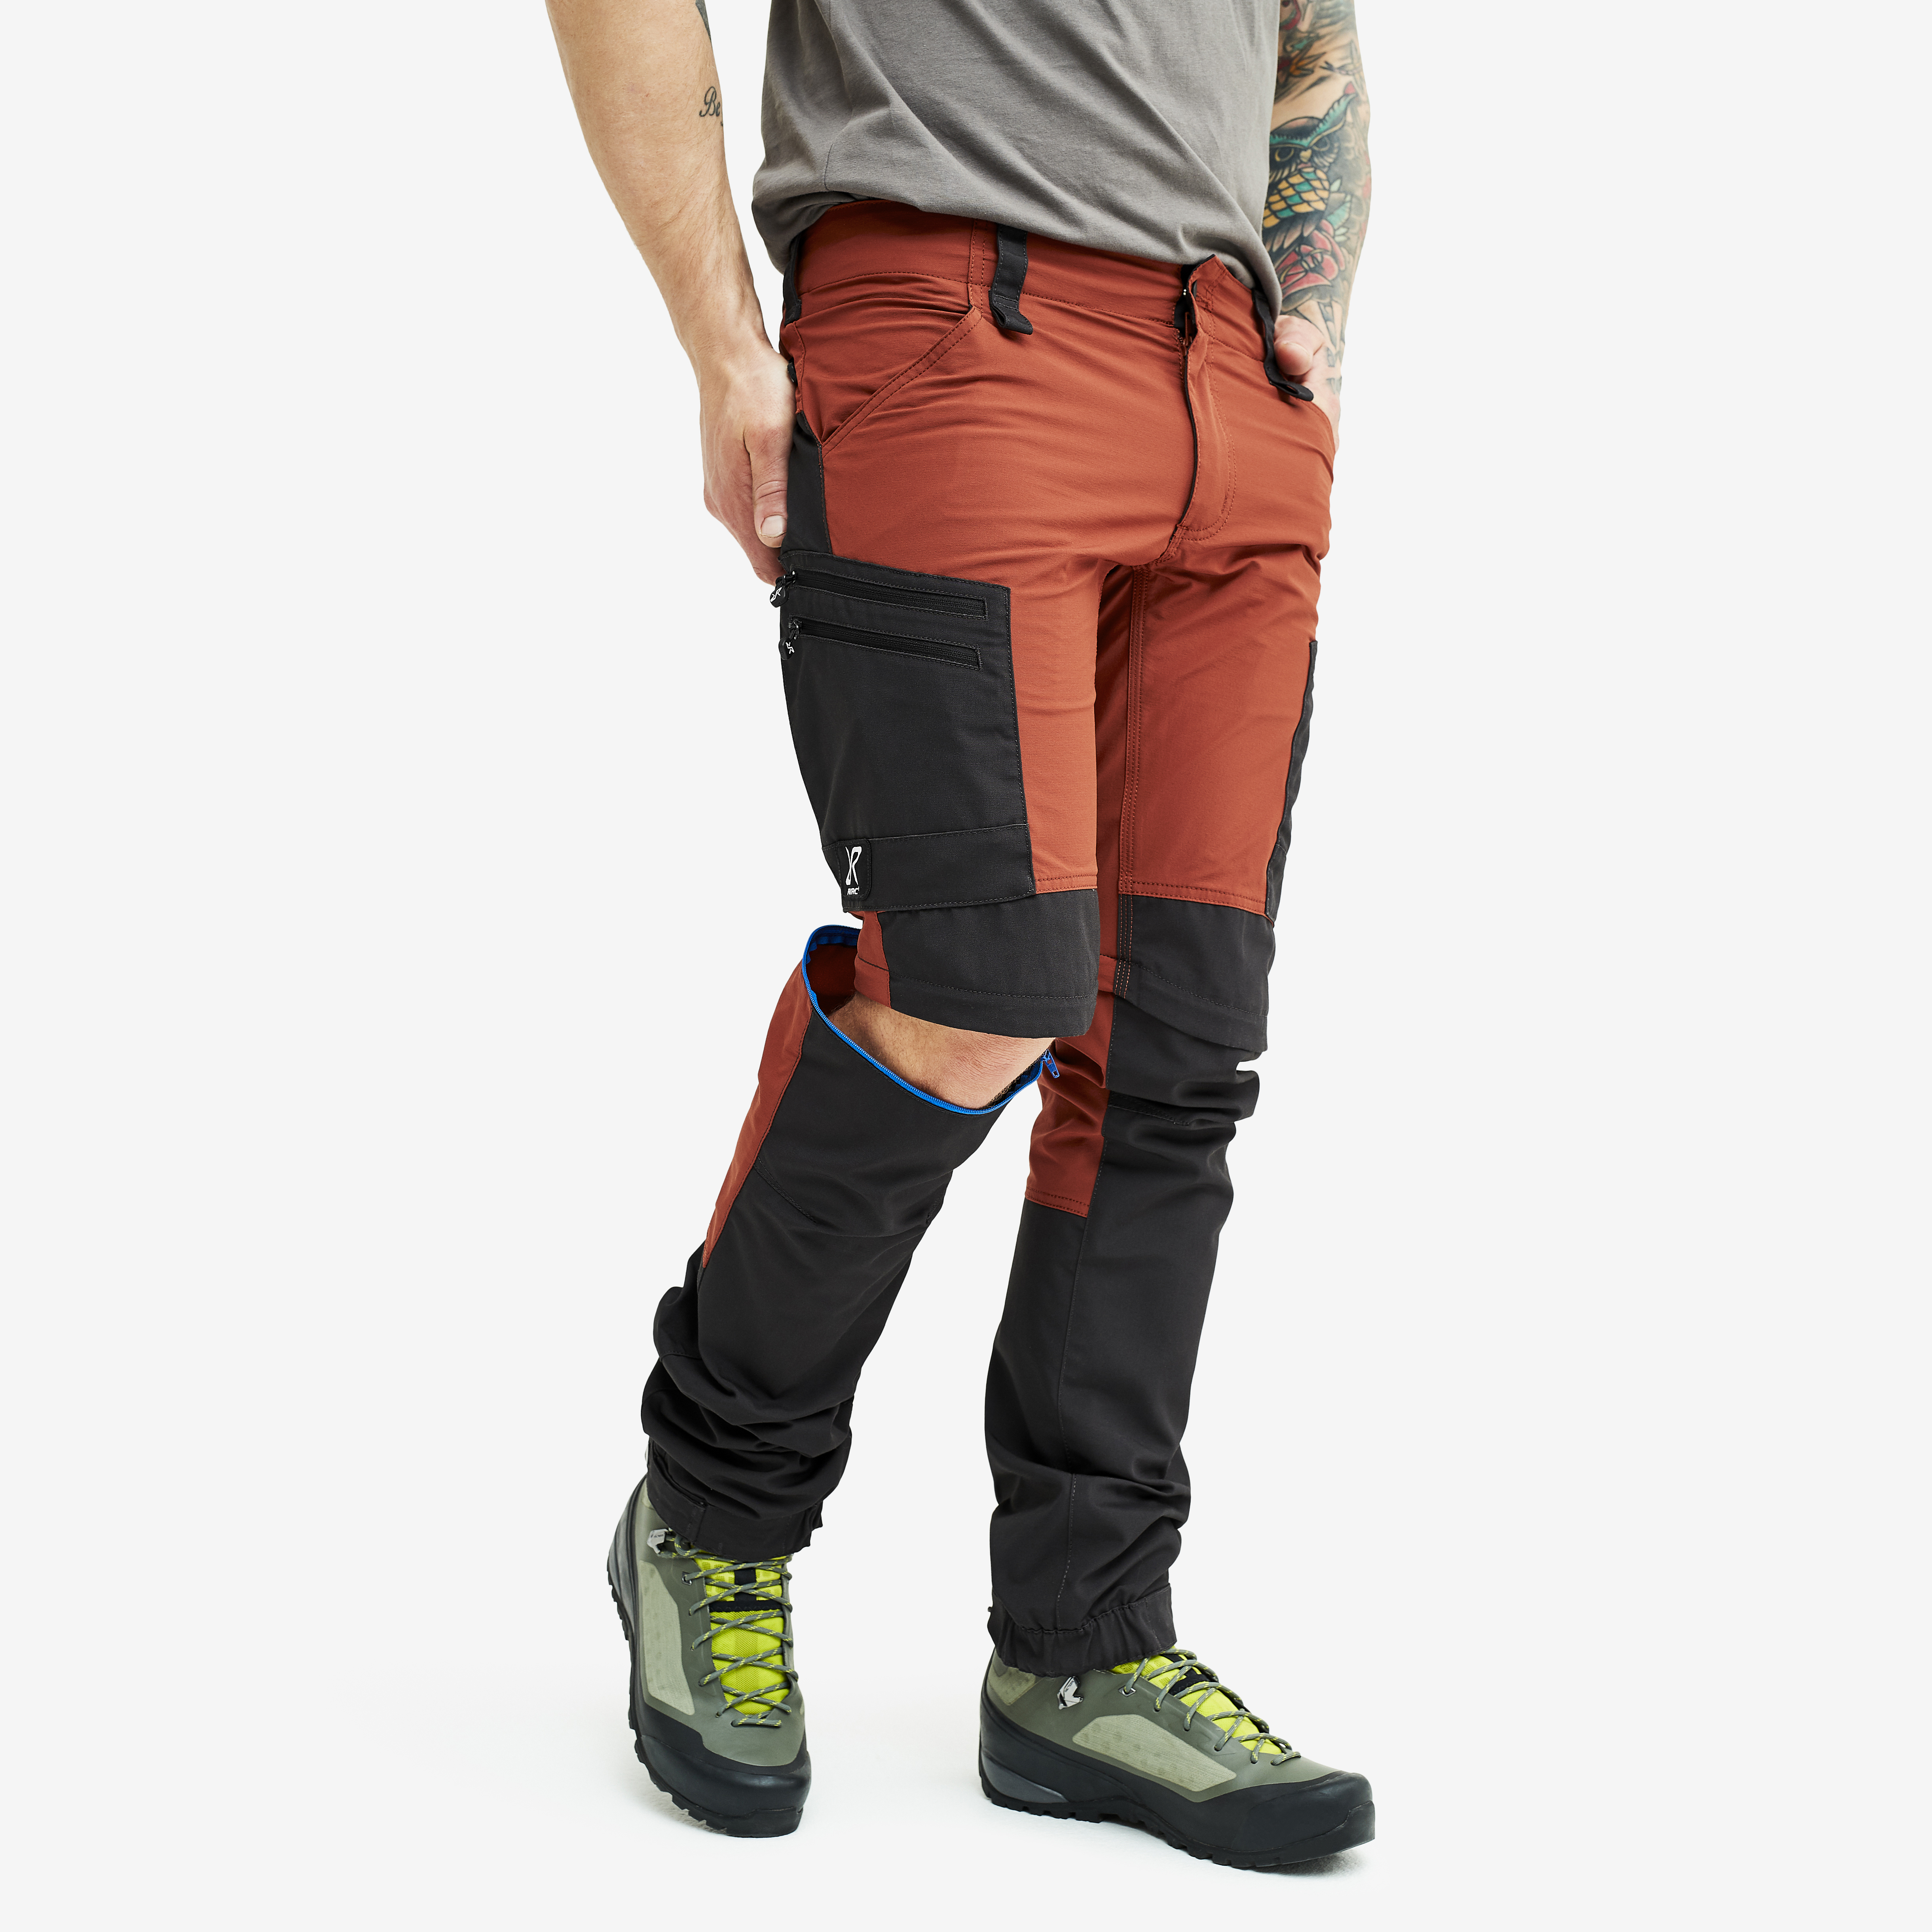 RVRC GP Pro Zip-off hiking pants for men in orange